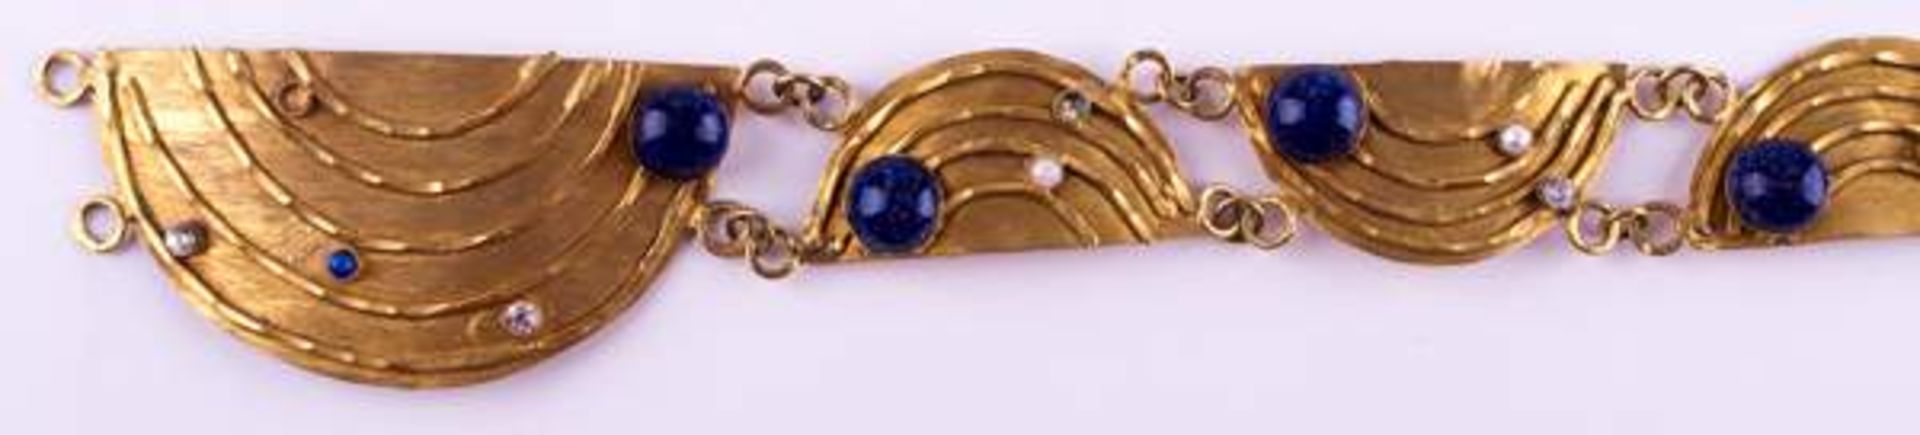 Schmuckgürtel Arabisch / Jewellery belt, Arabianmit verschiedenem Steinbesatz, Lapislazuli, echte - Bild 2 aus 6